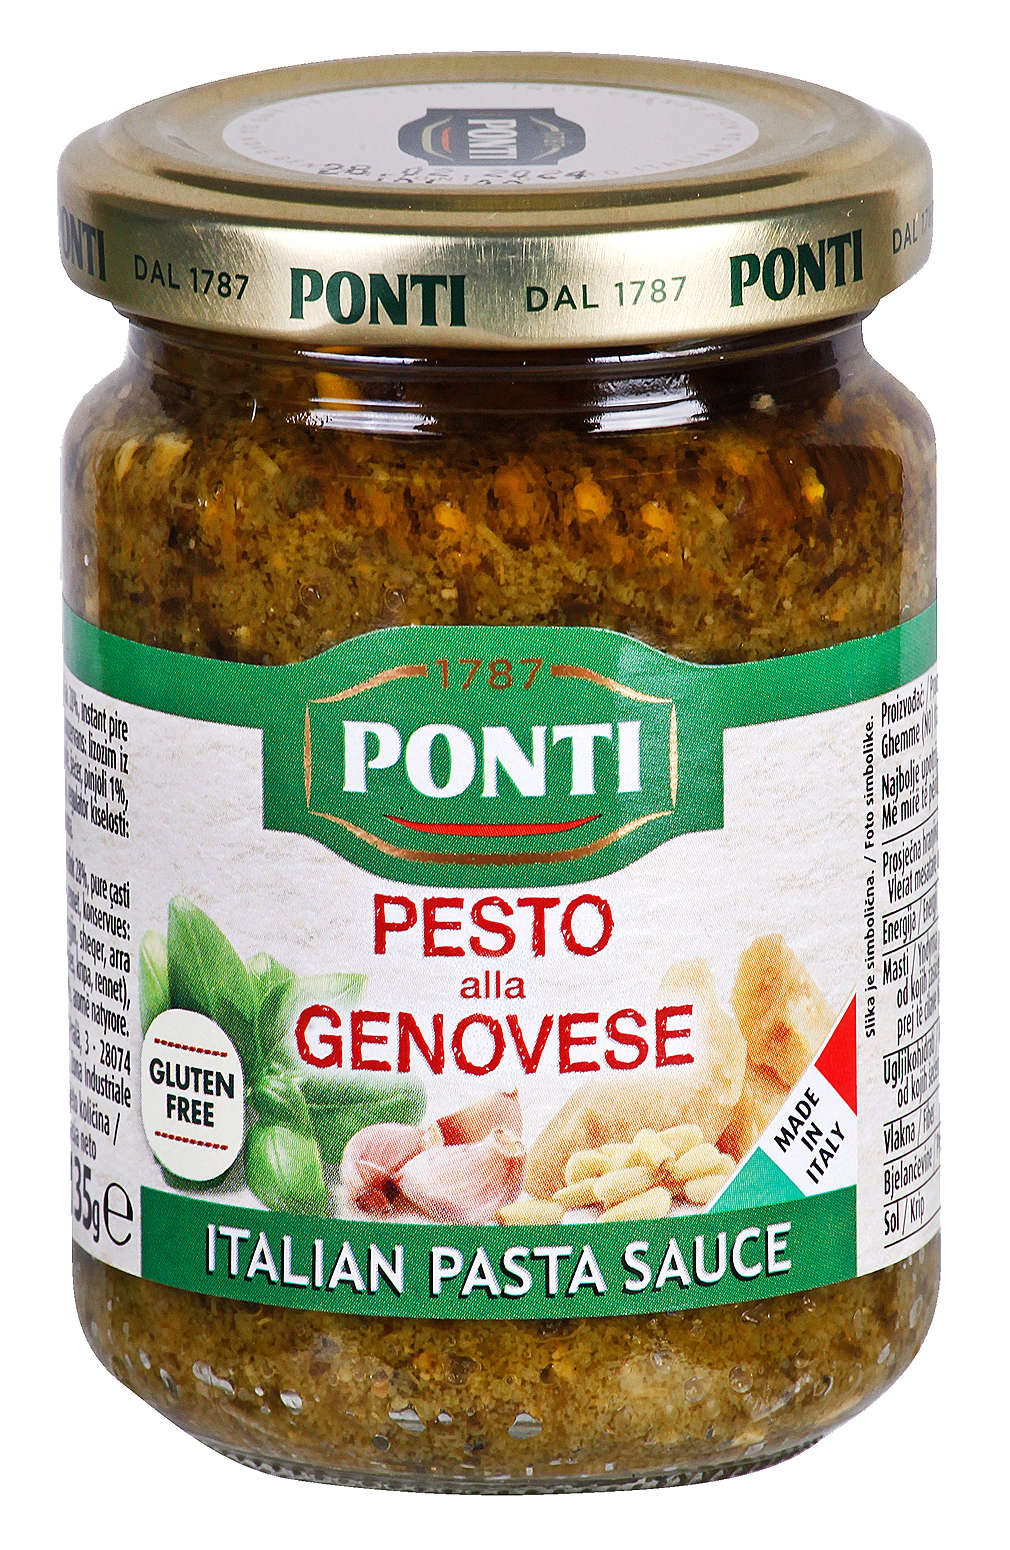 Fotografija ponude Ponti Pesto alla genovese